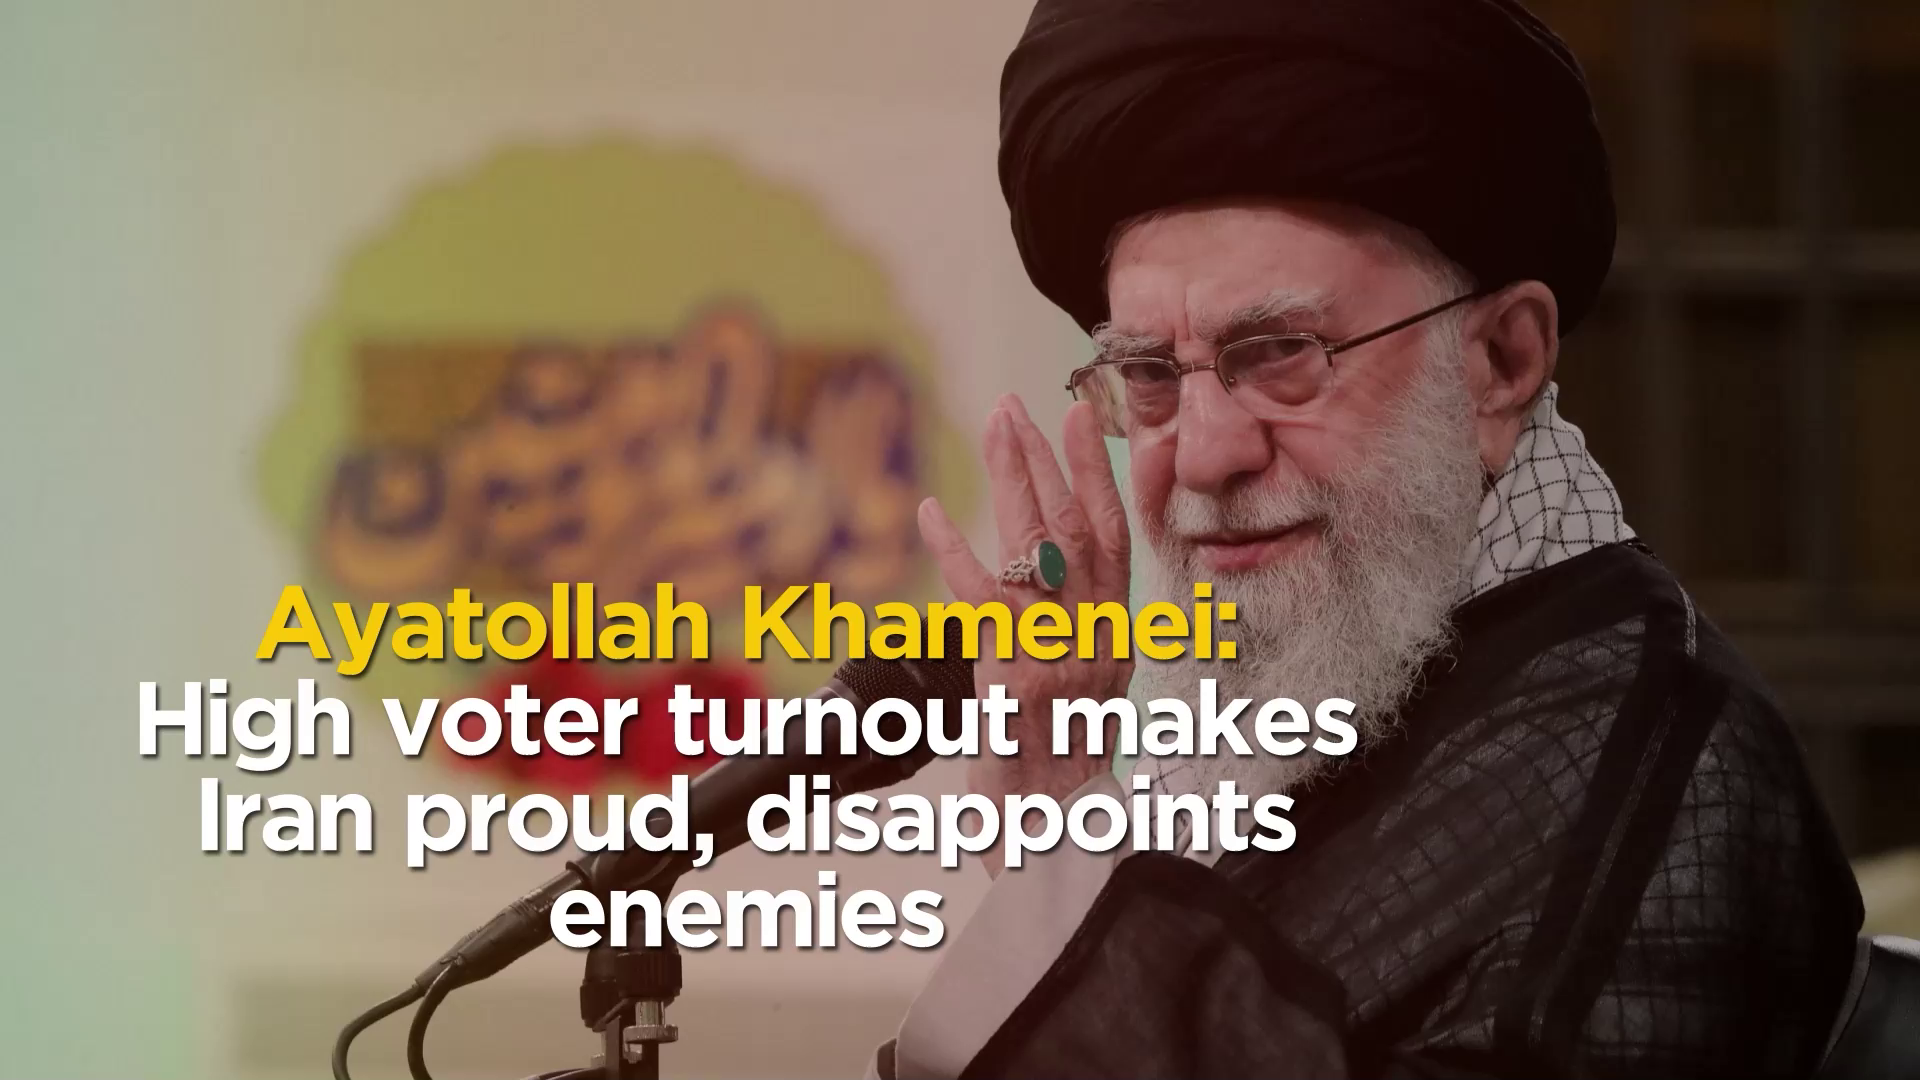 Ayatollah Khamenei: High voter turnout makes Iran proud, disappoints enemies